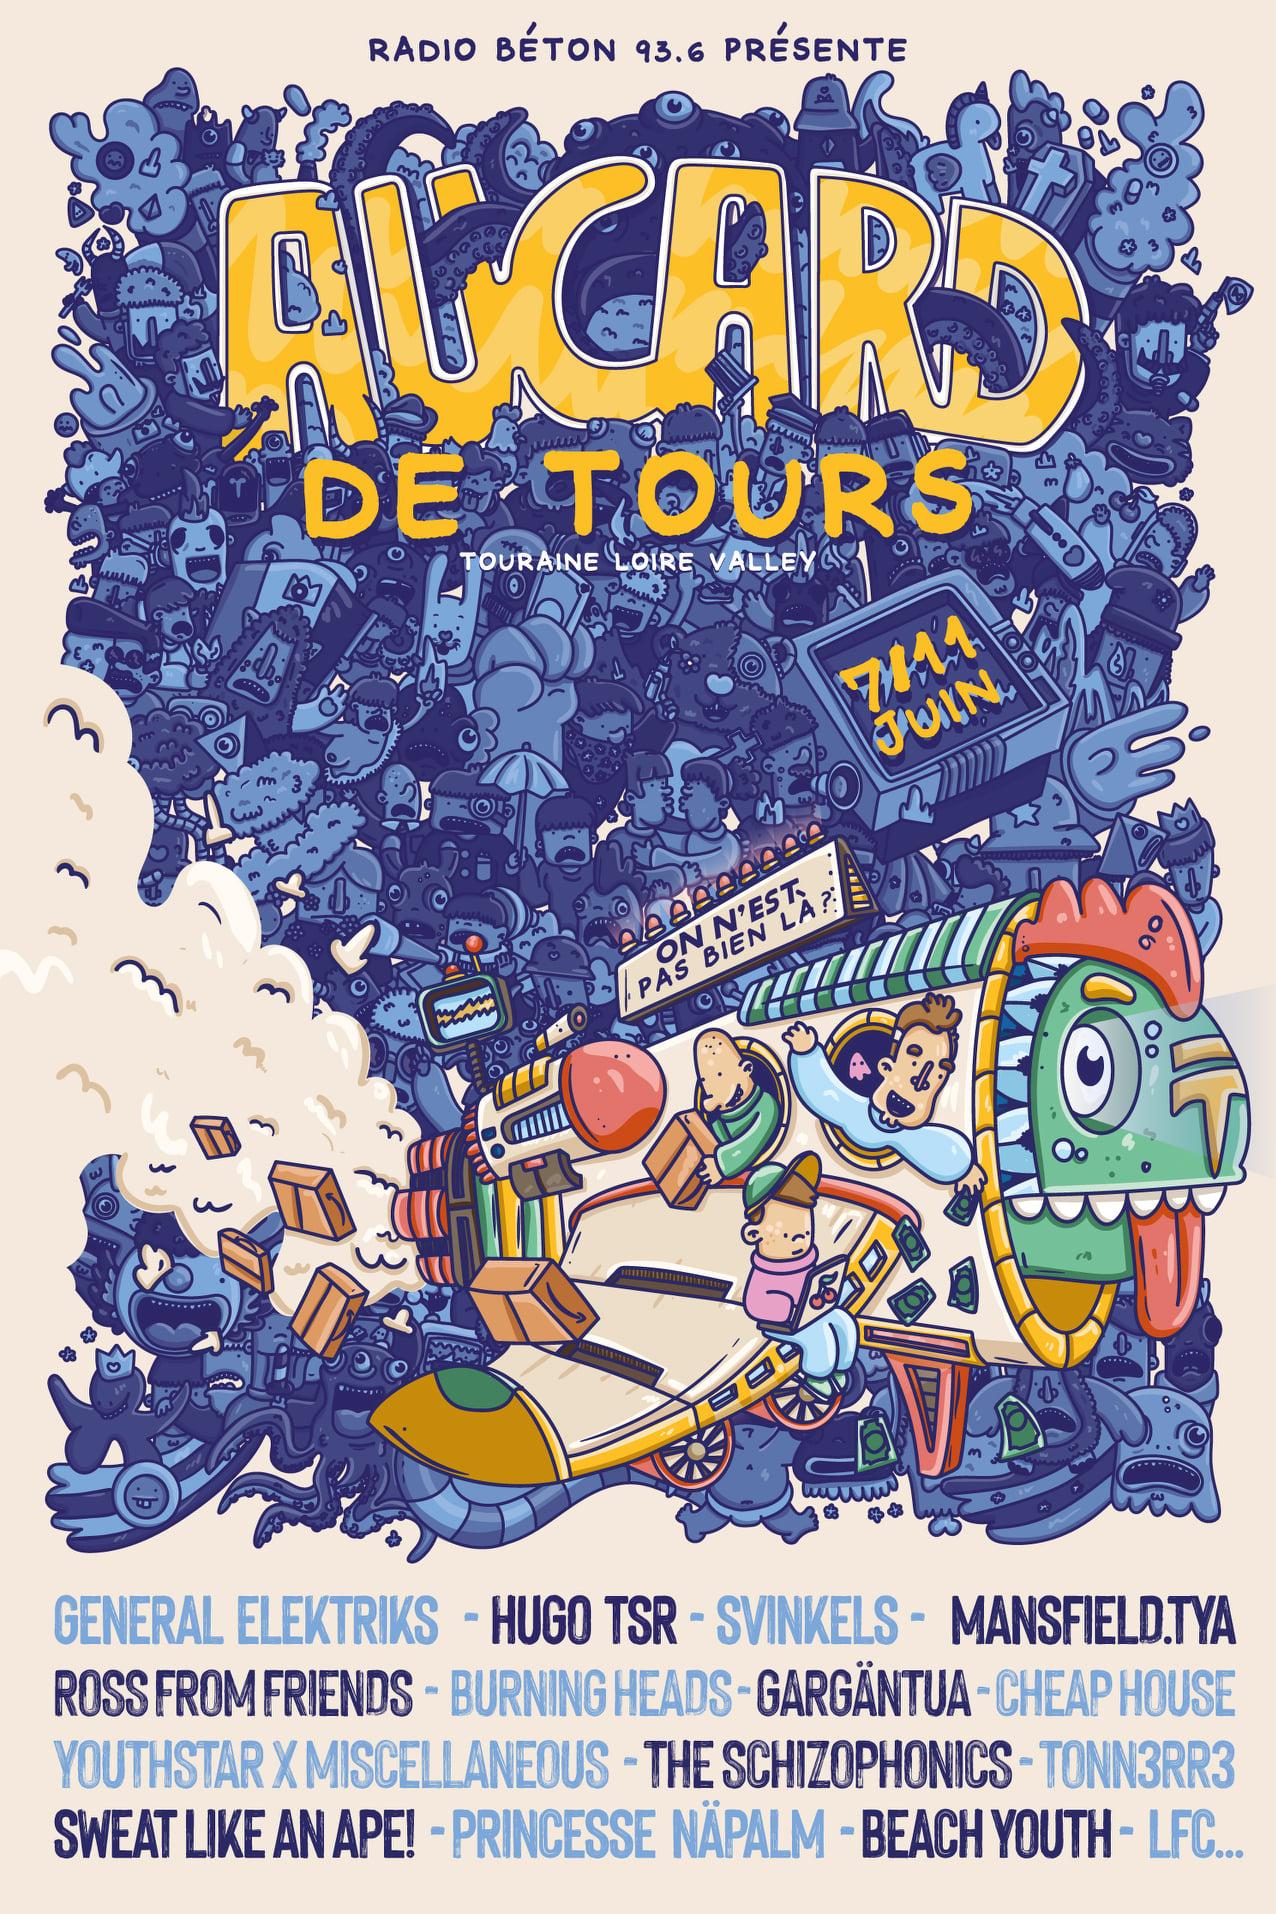 La FERAROCK au Festival Aucard de Tours